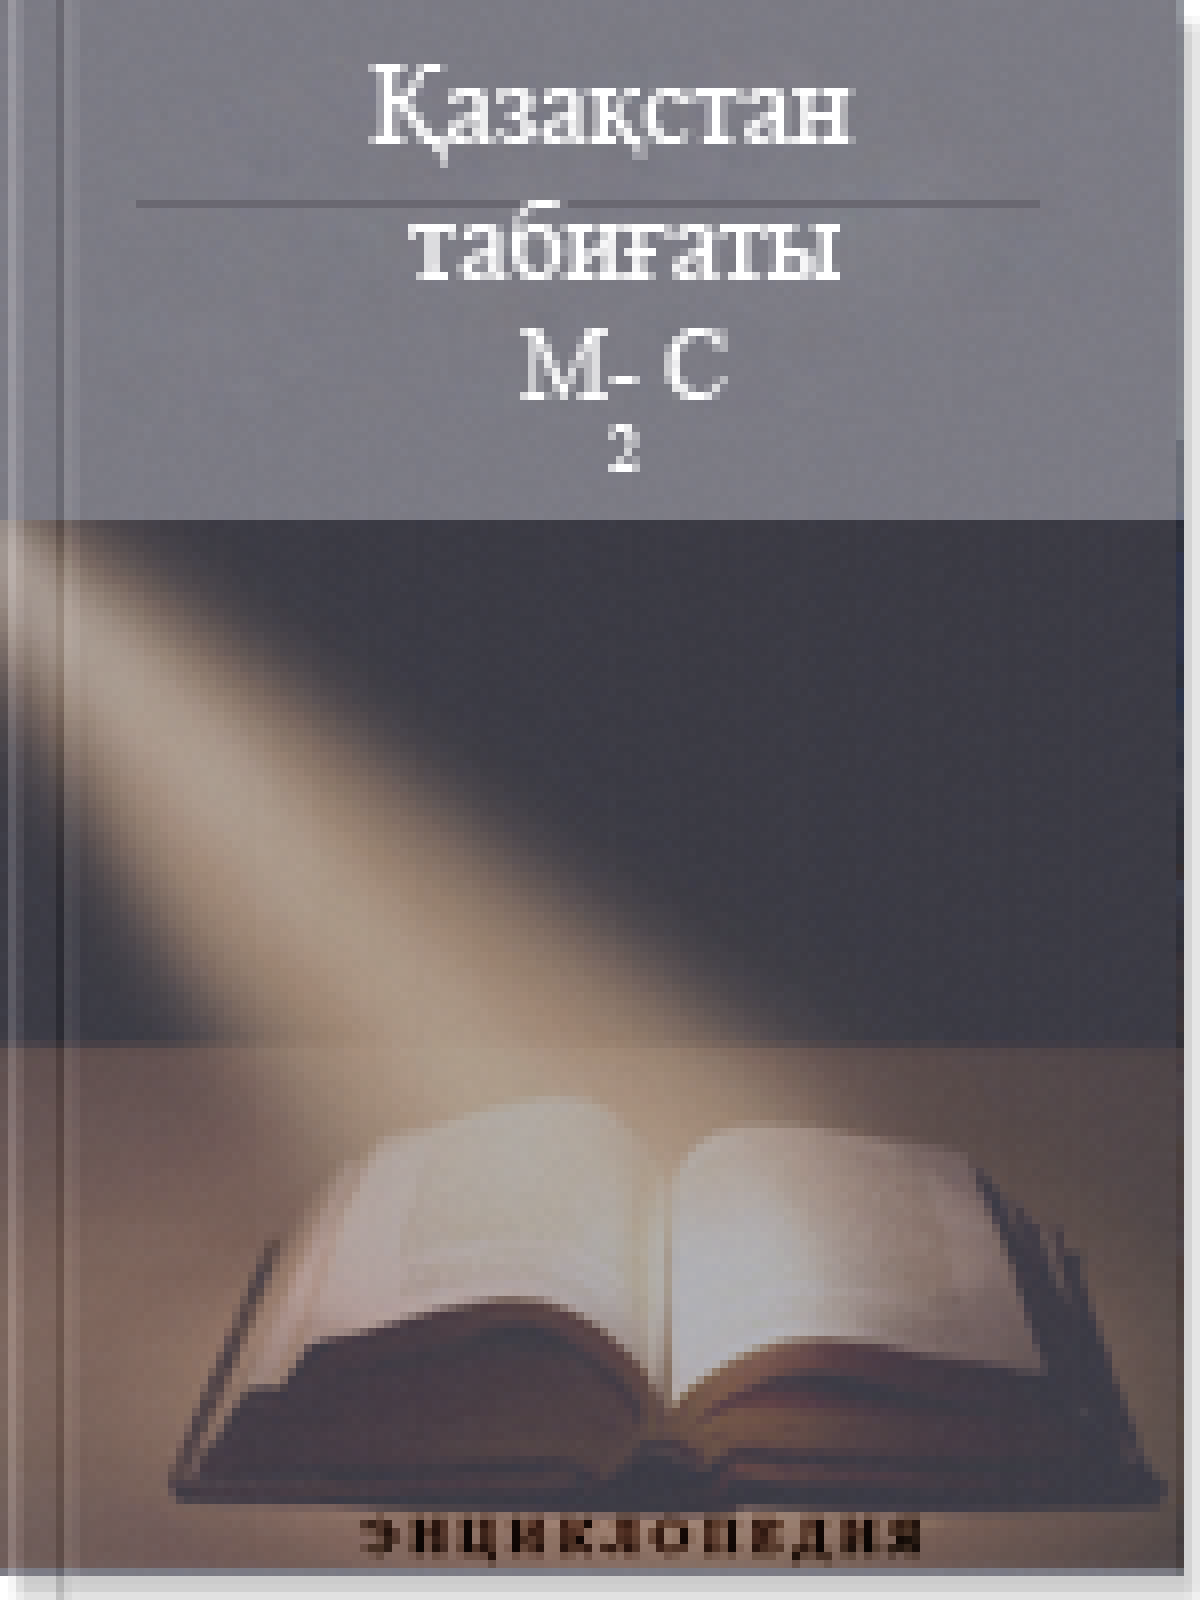 Қазақстан табиғаты 4 том М-С (2)